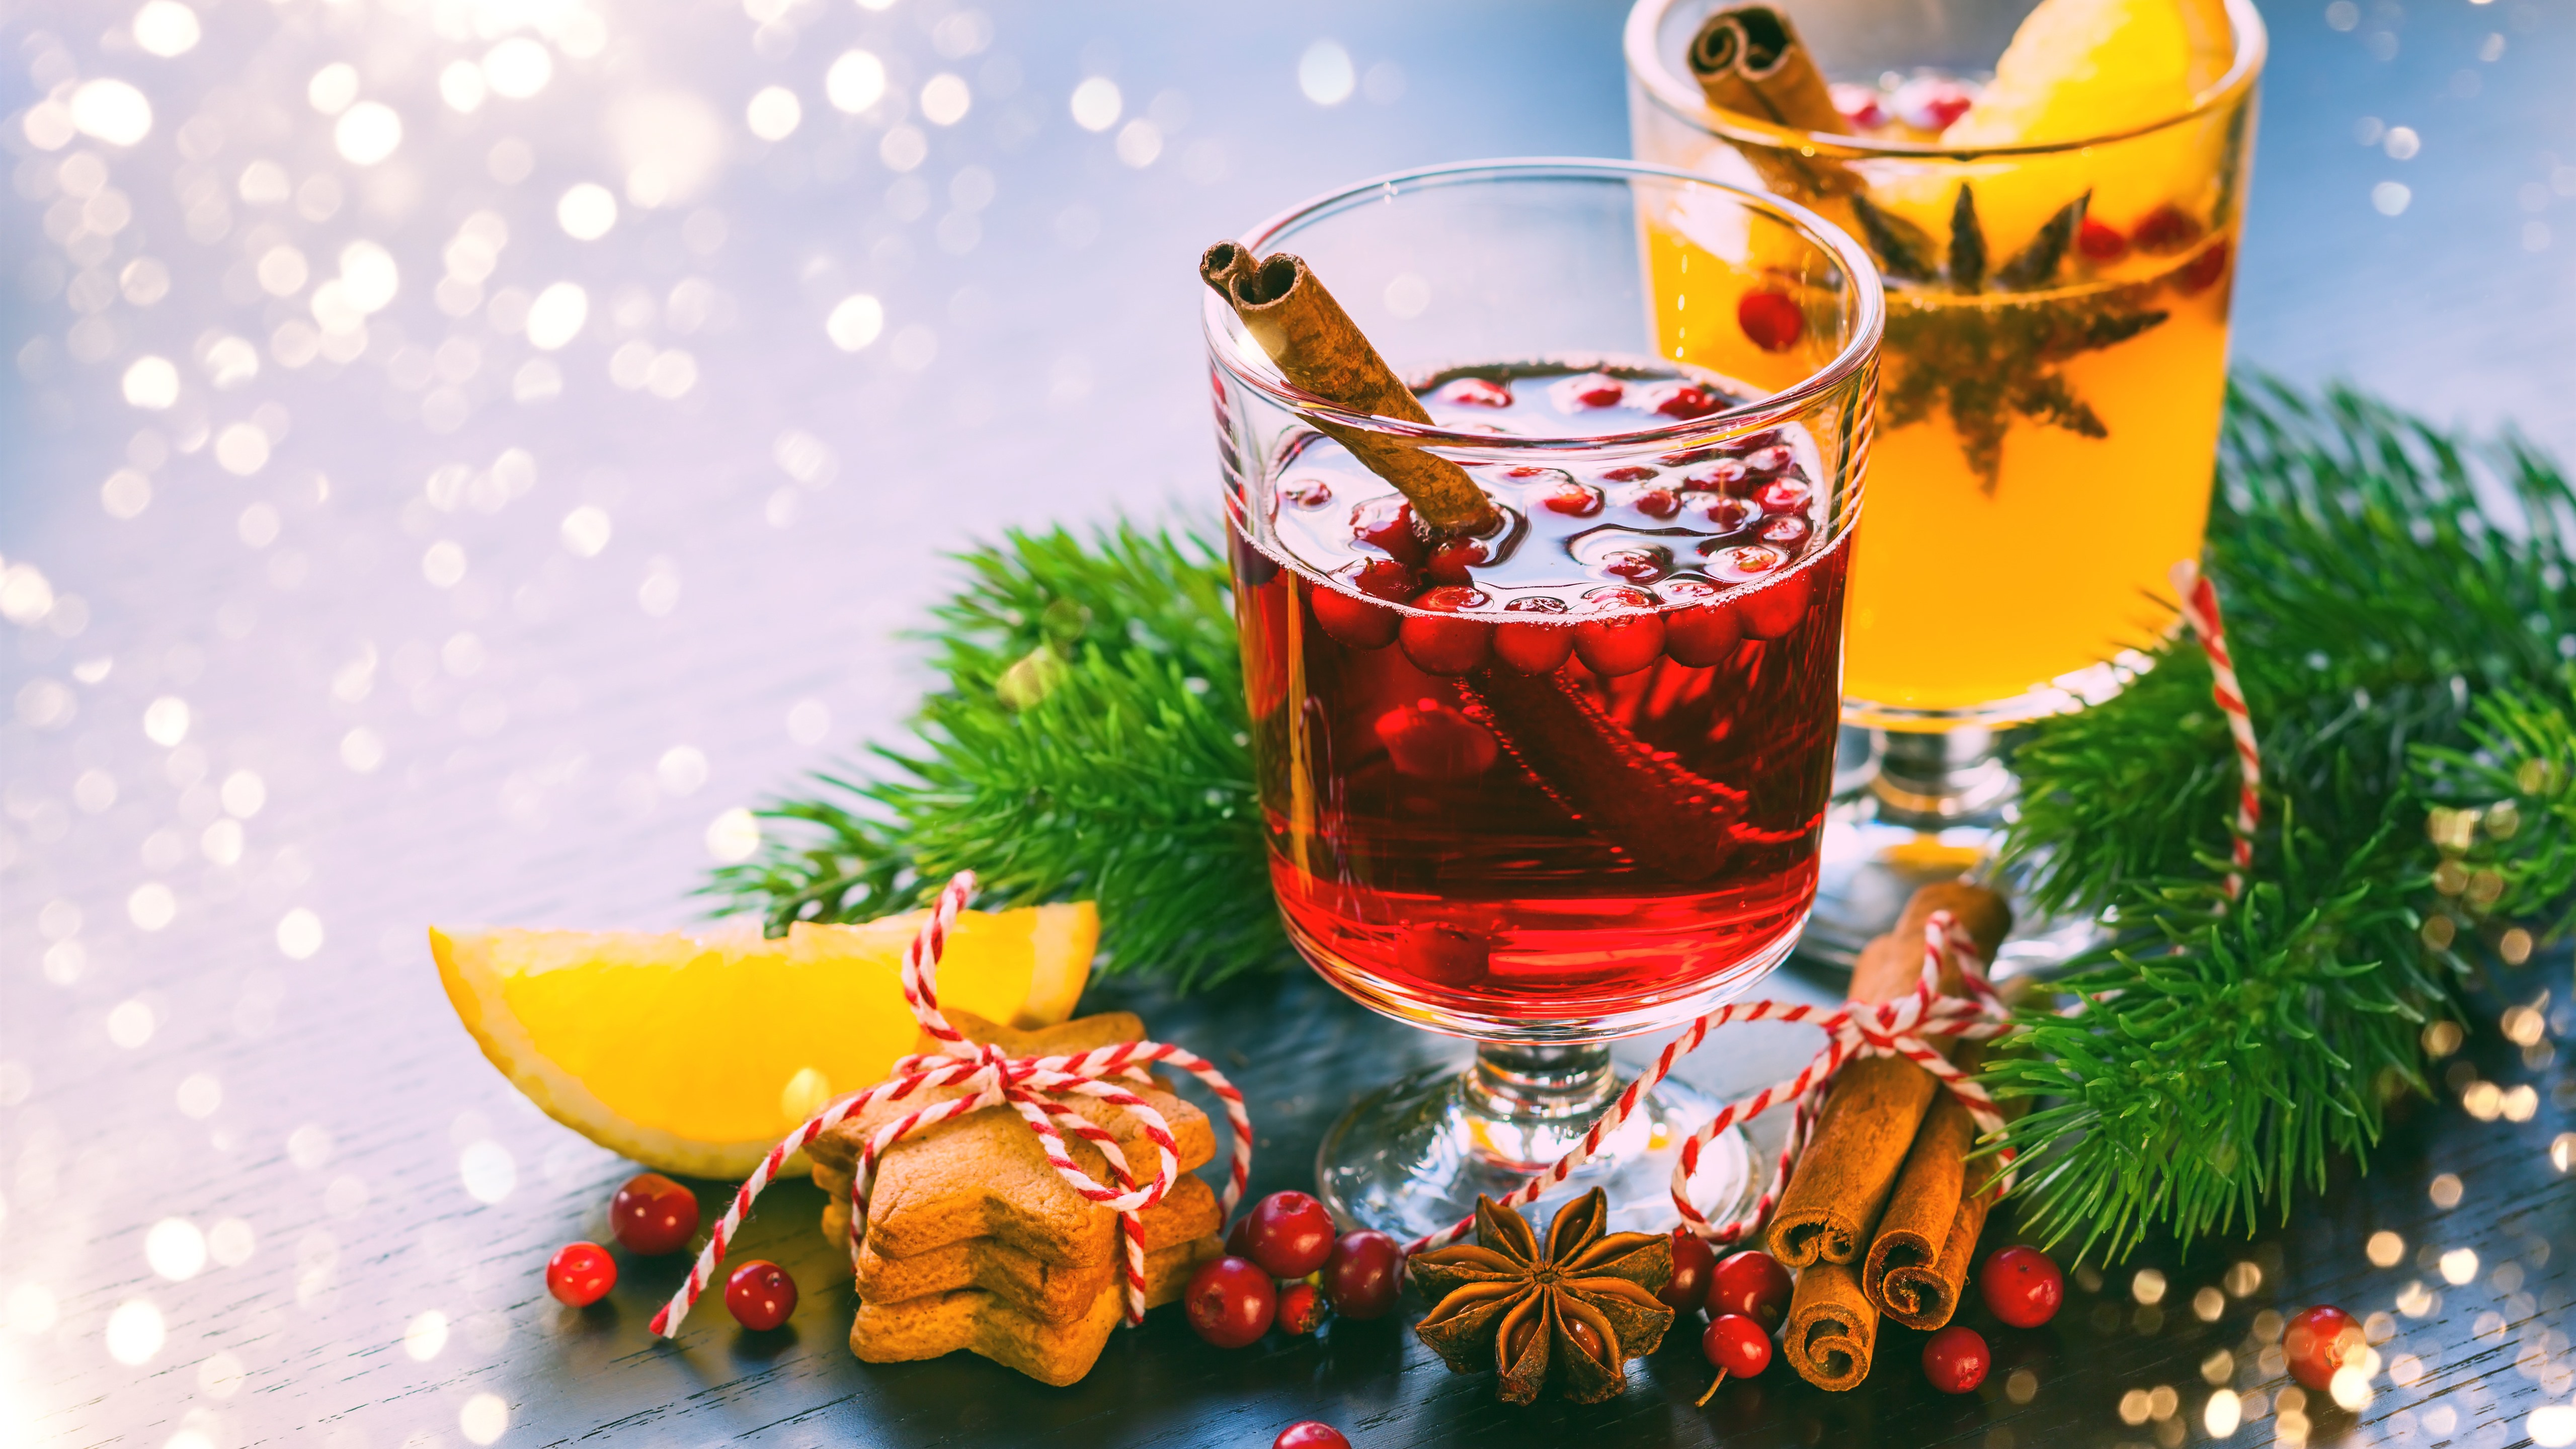 Wallpaper Cinnamon, Drinks, Cookies, Berries, Christmas - Merry Christmas For Food - HD Wallpaper 